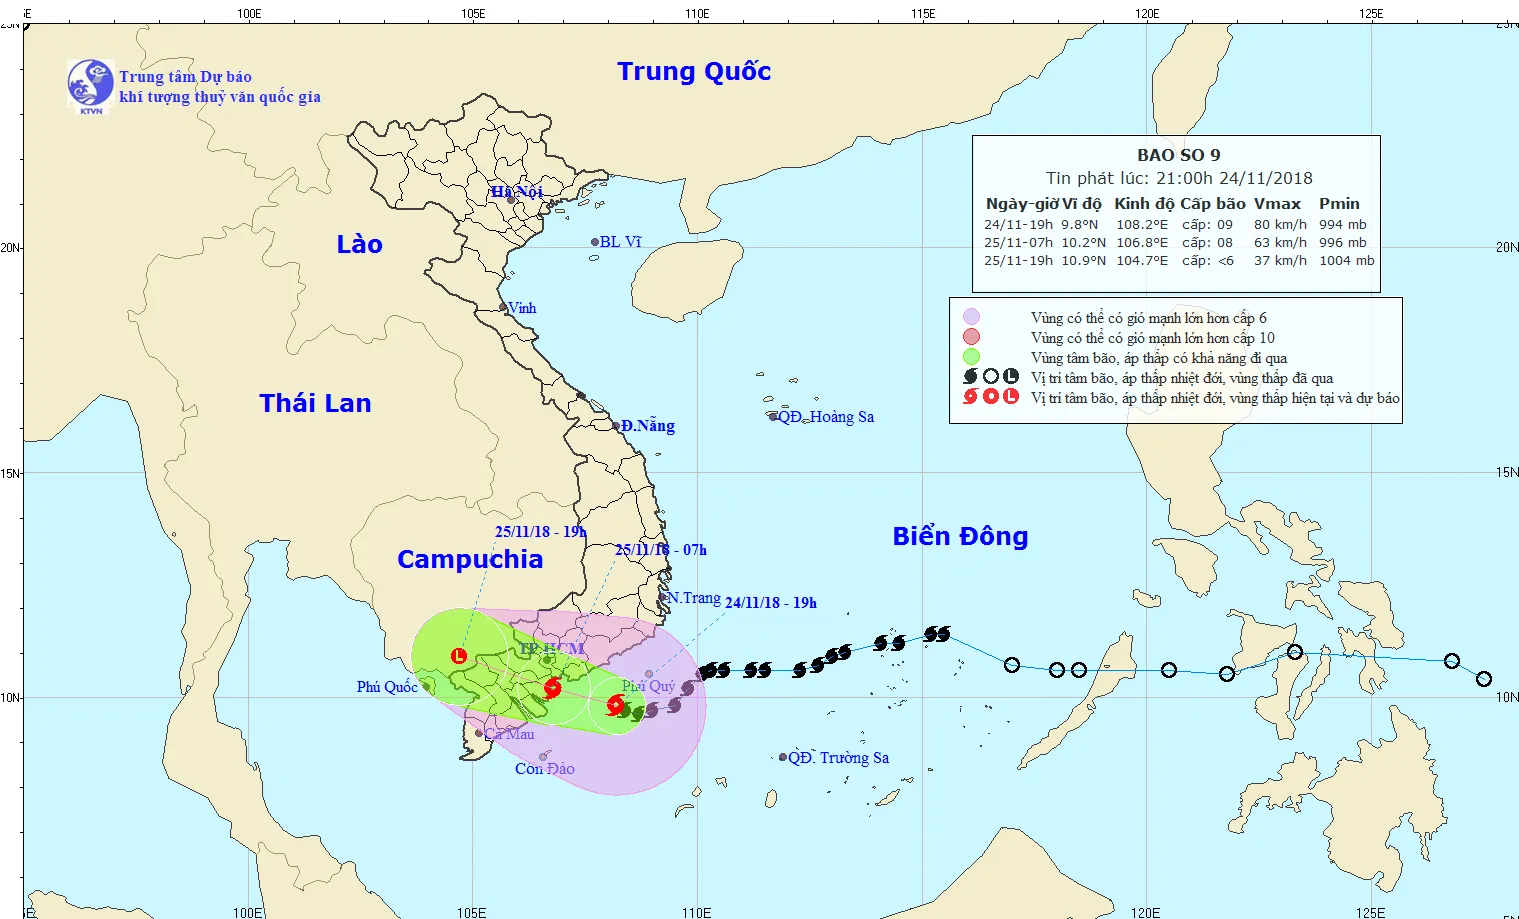 Dự báo thời tiết : Sớm mai 25/11, bão số 9 đi vào đất liền các tỉnh từ Nam Bình Thuận đến Bến Tre